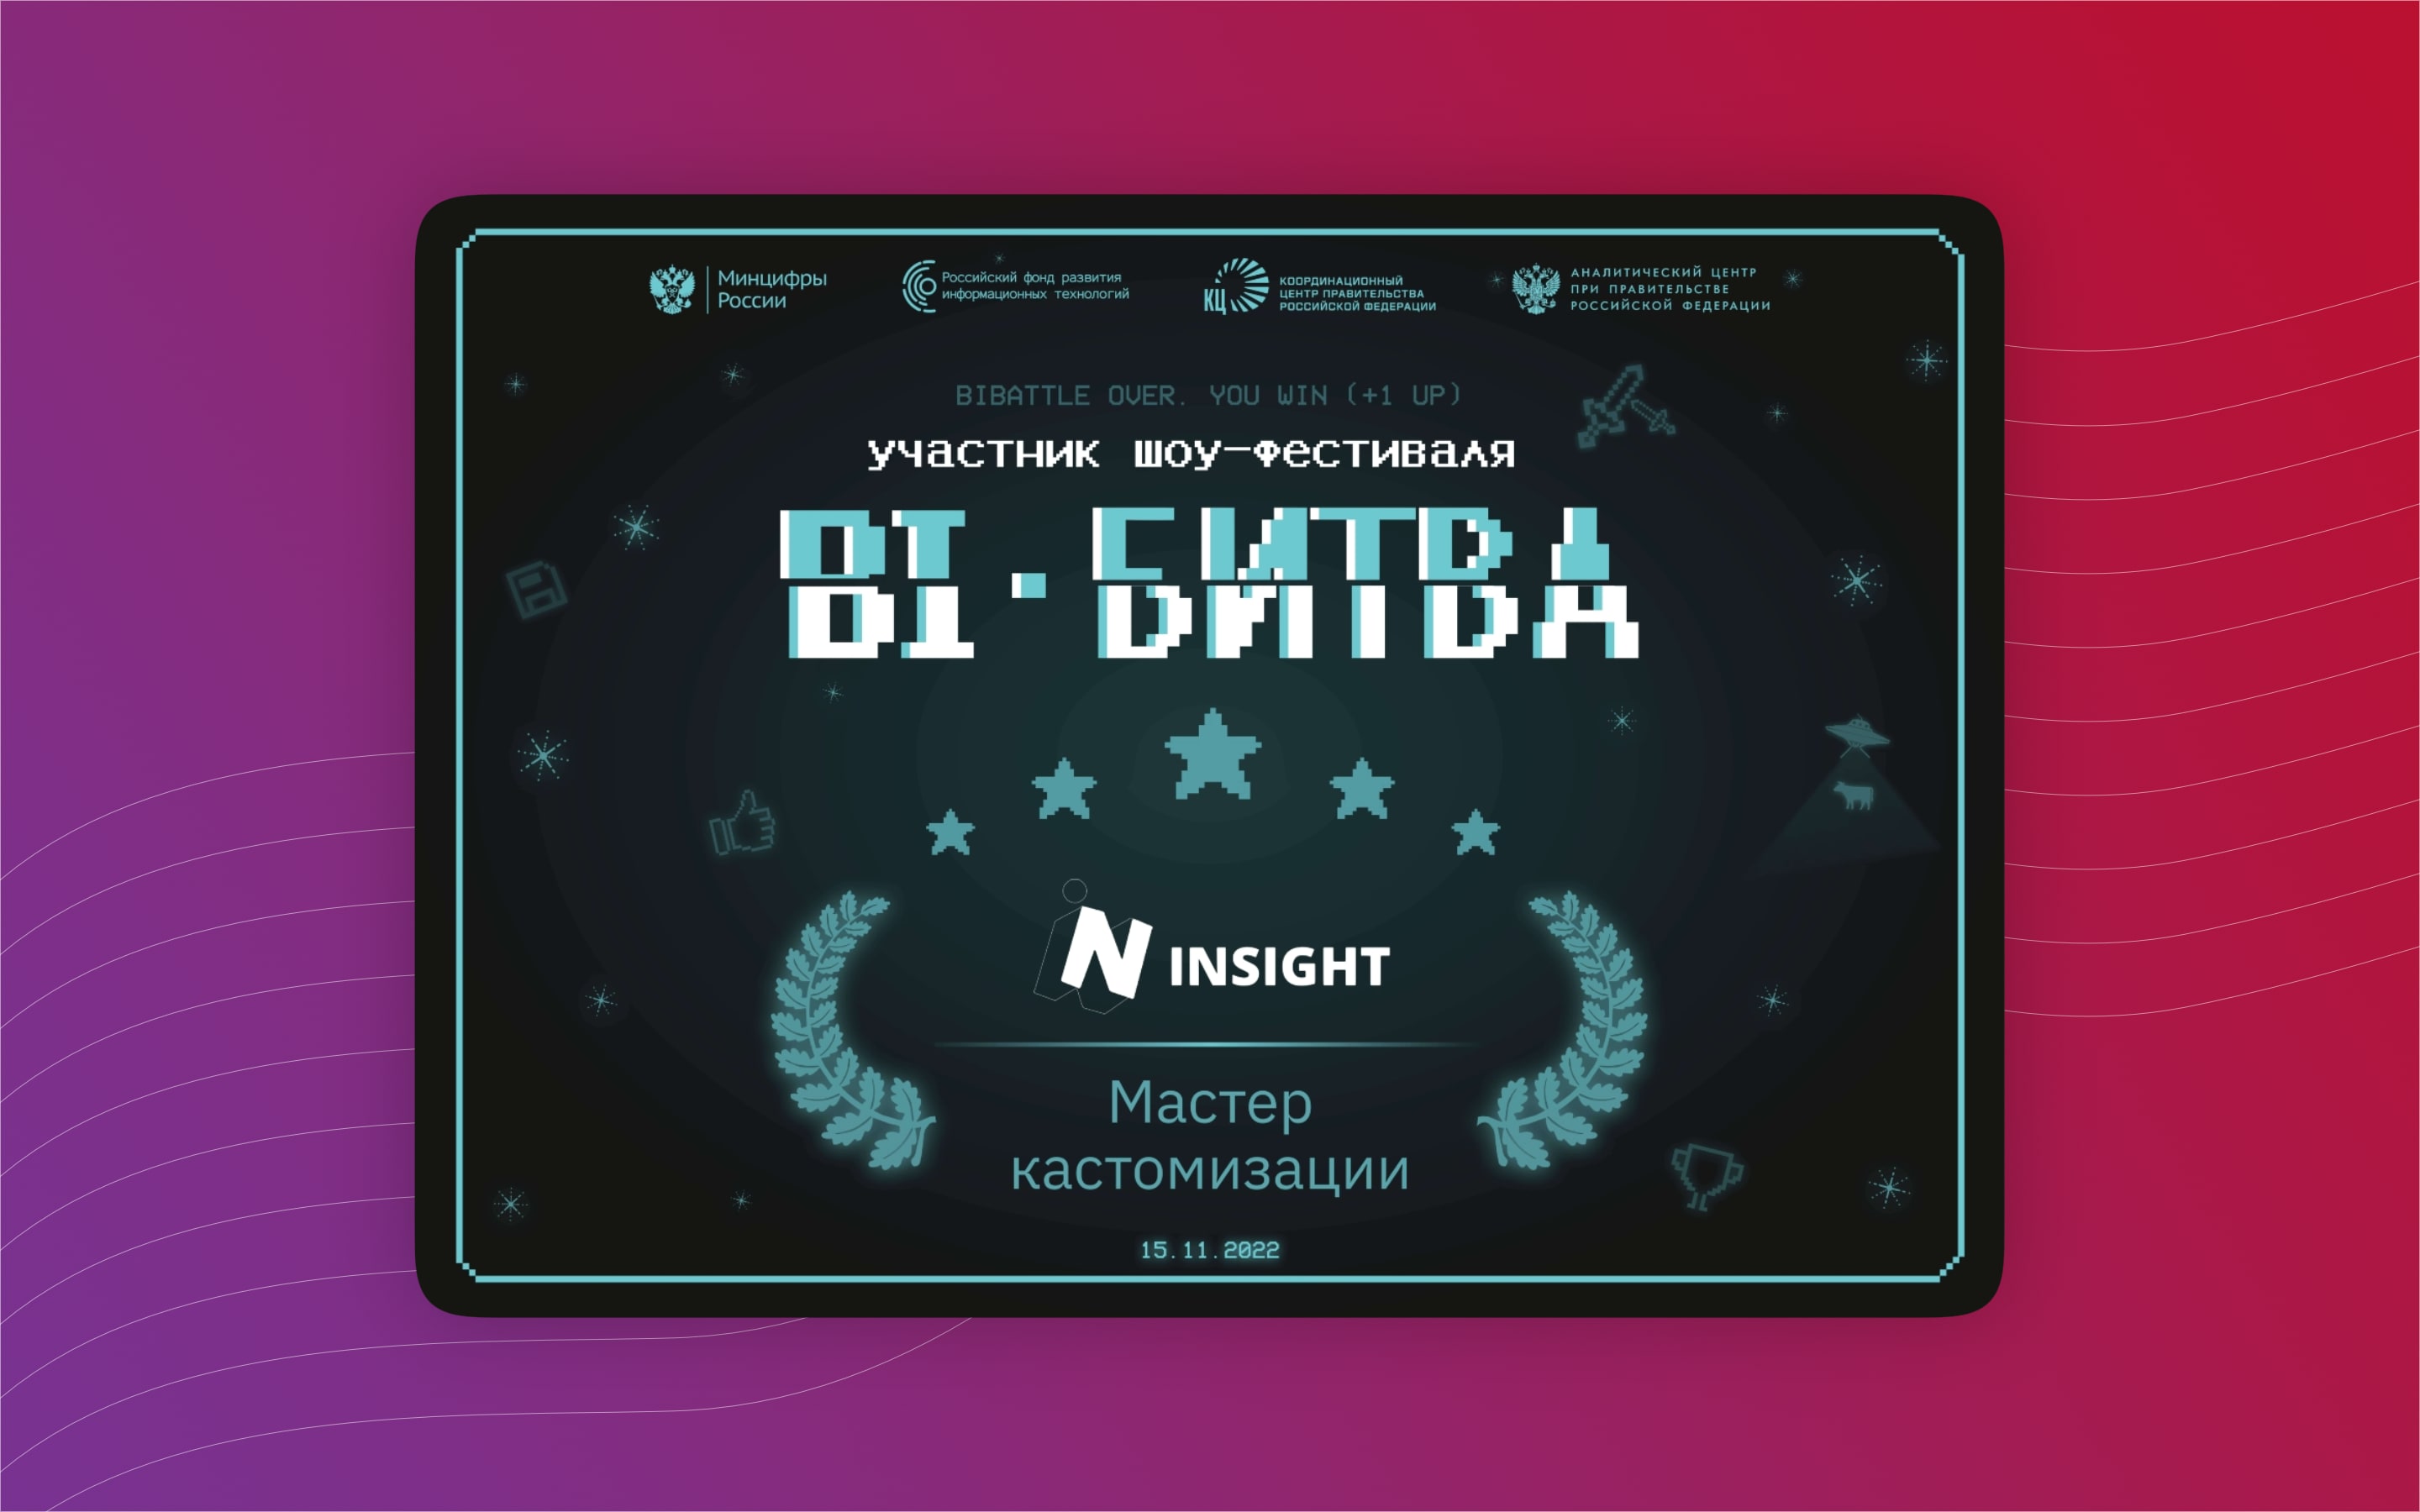 ГК Goodt приняла участие в «BI Battle» — шоу‑фестивале BI‑решений из России по использованию успешных кейсов в госсекторе